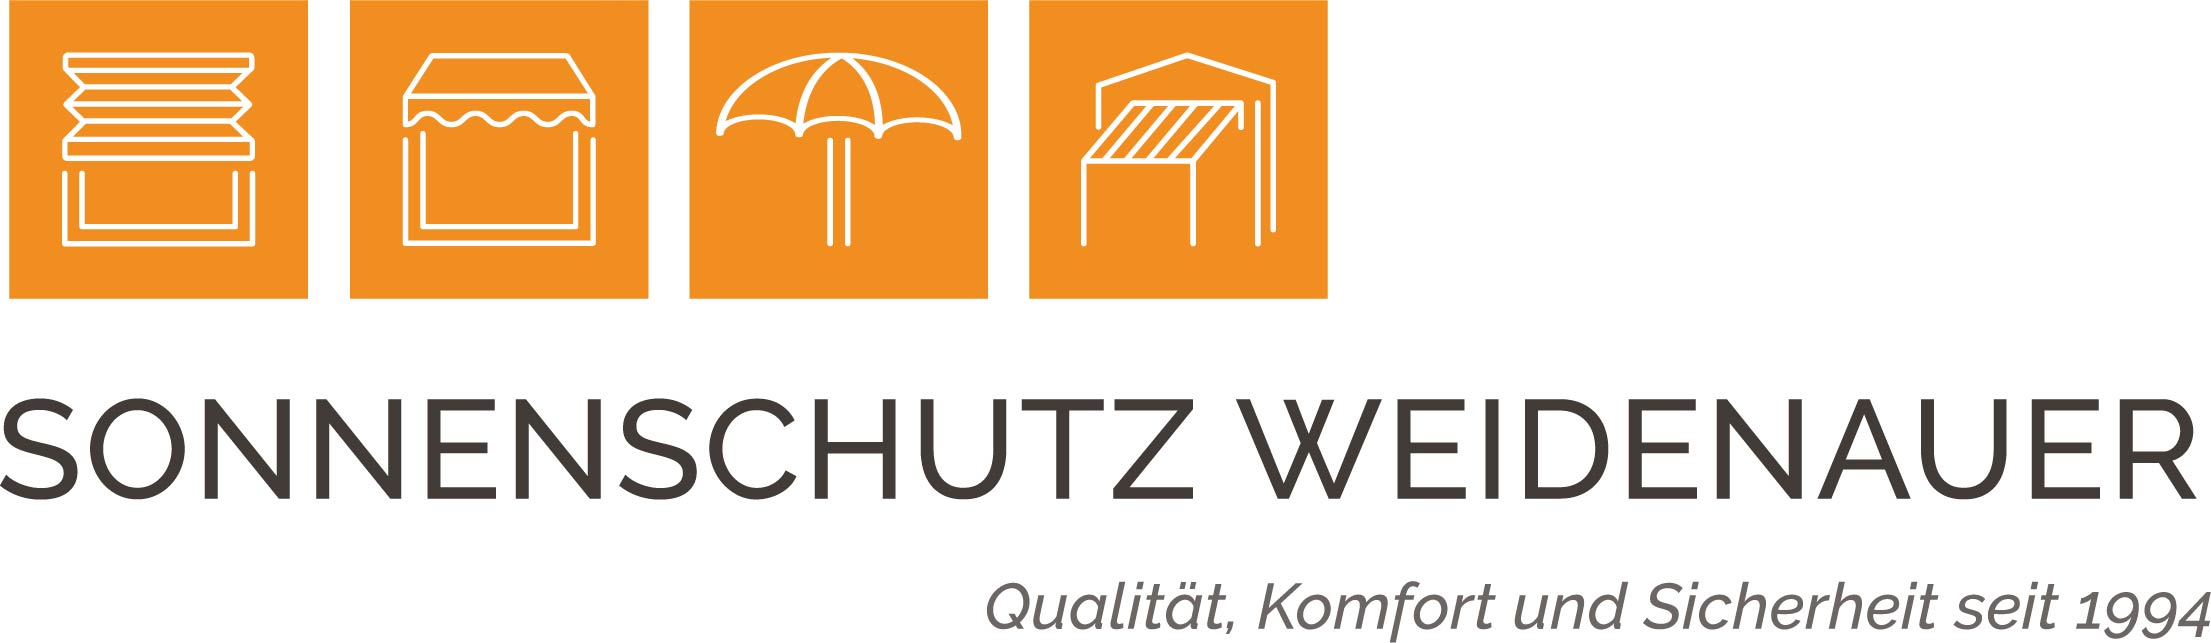 Sonnenschutz Weidenauer GmbH